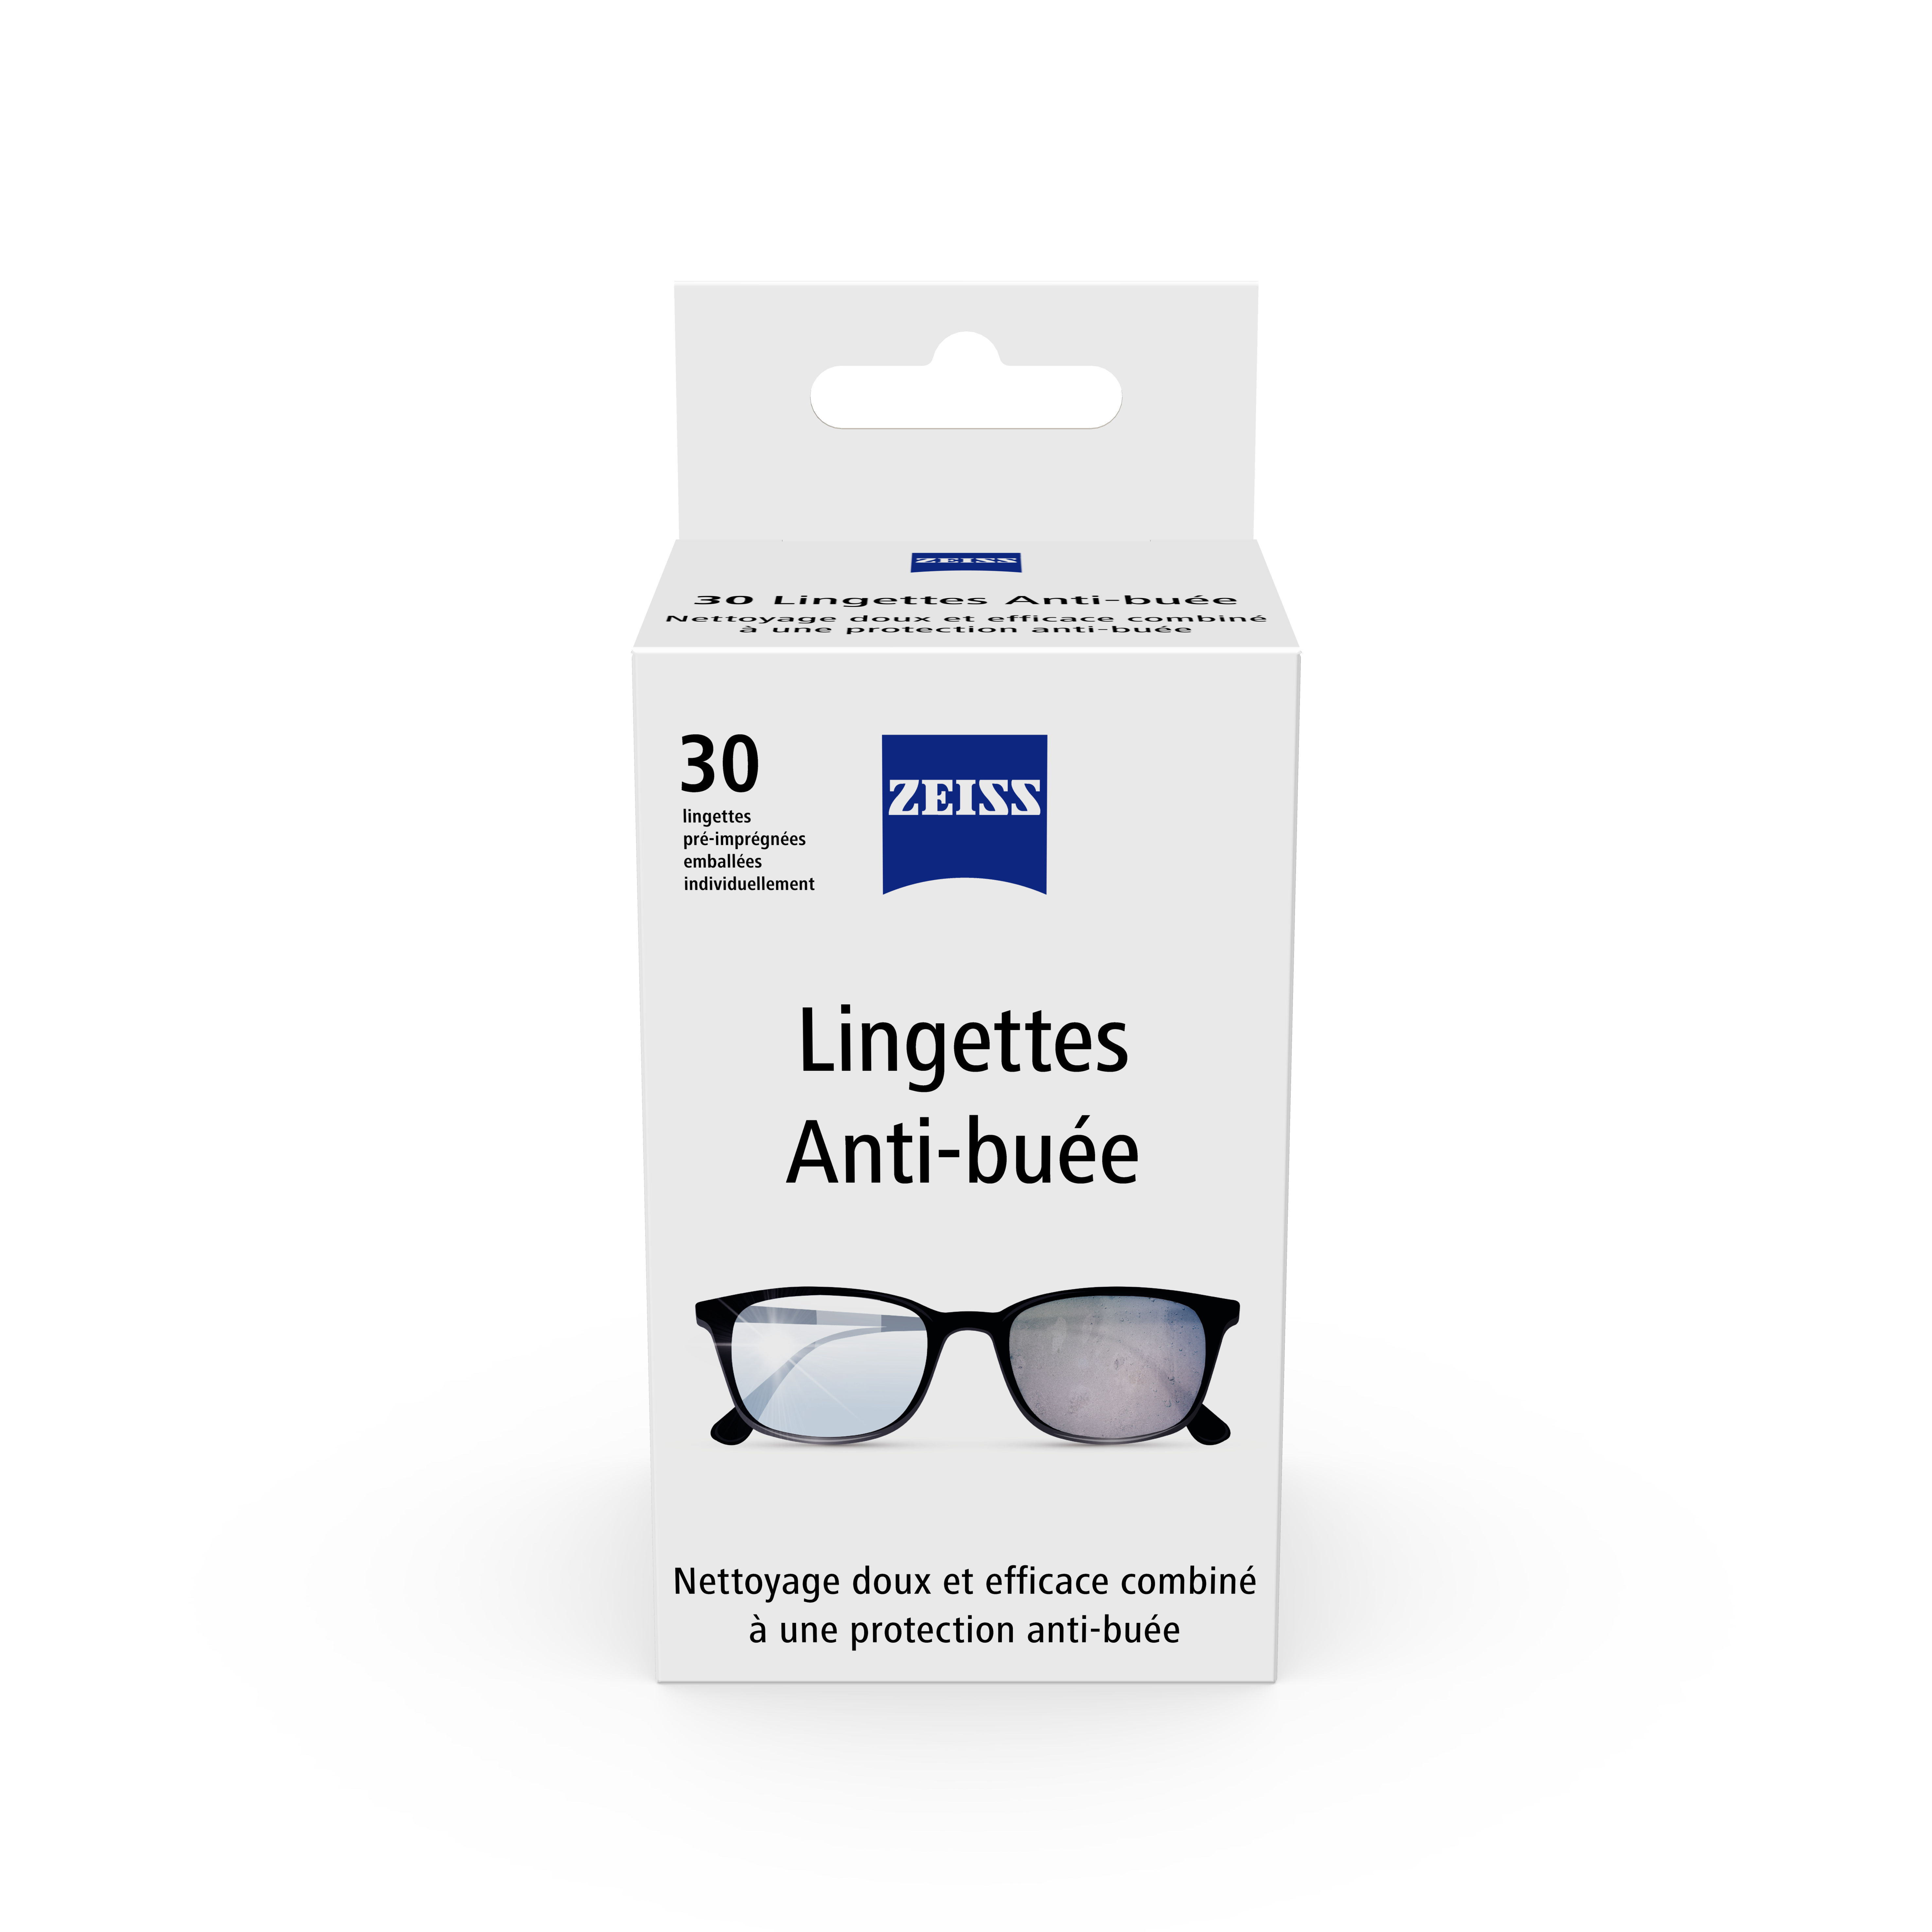 Lingette anti buee lunette, efficace nettoyant lunettes -50